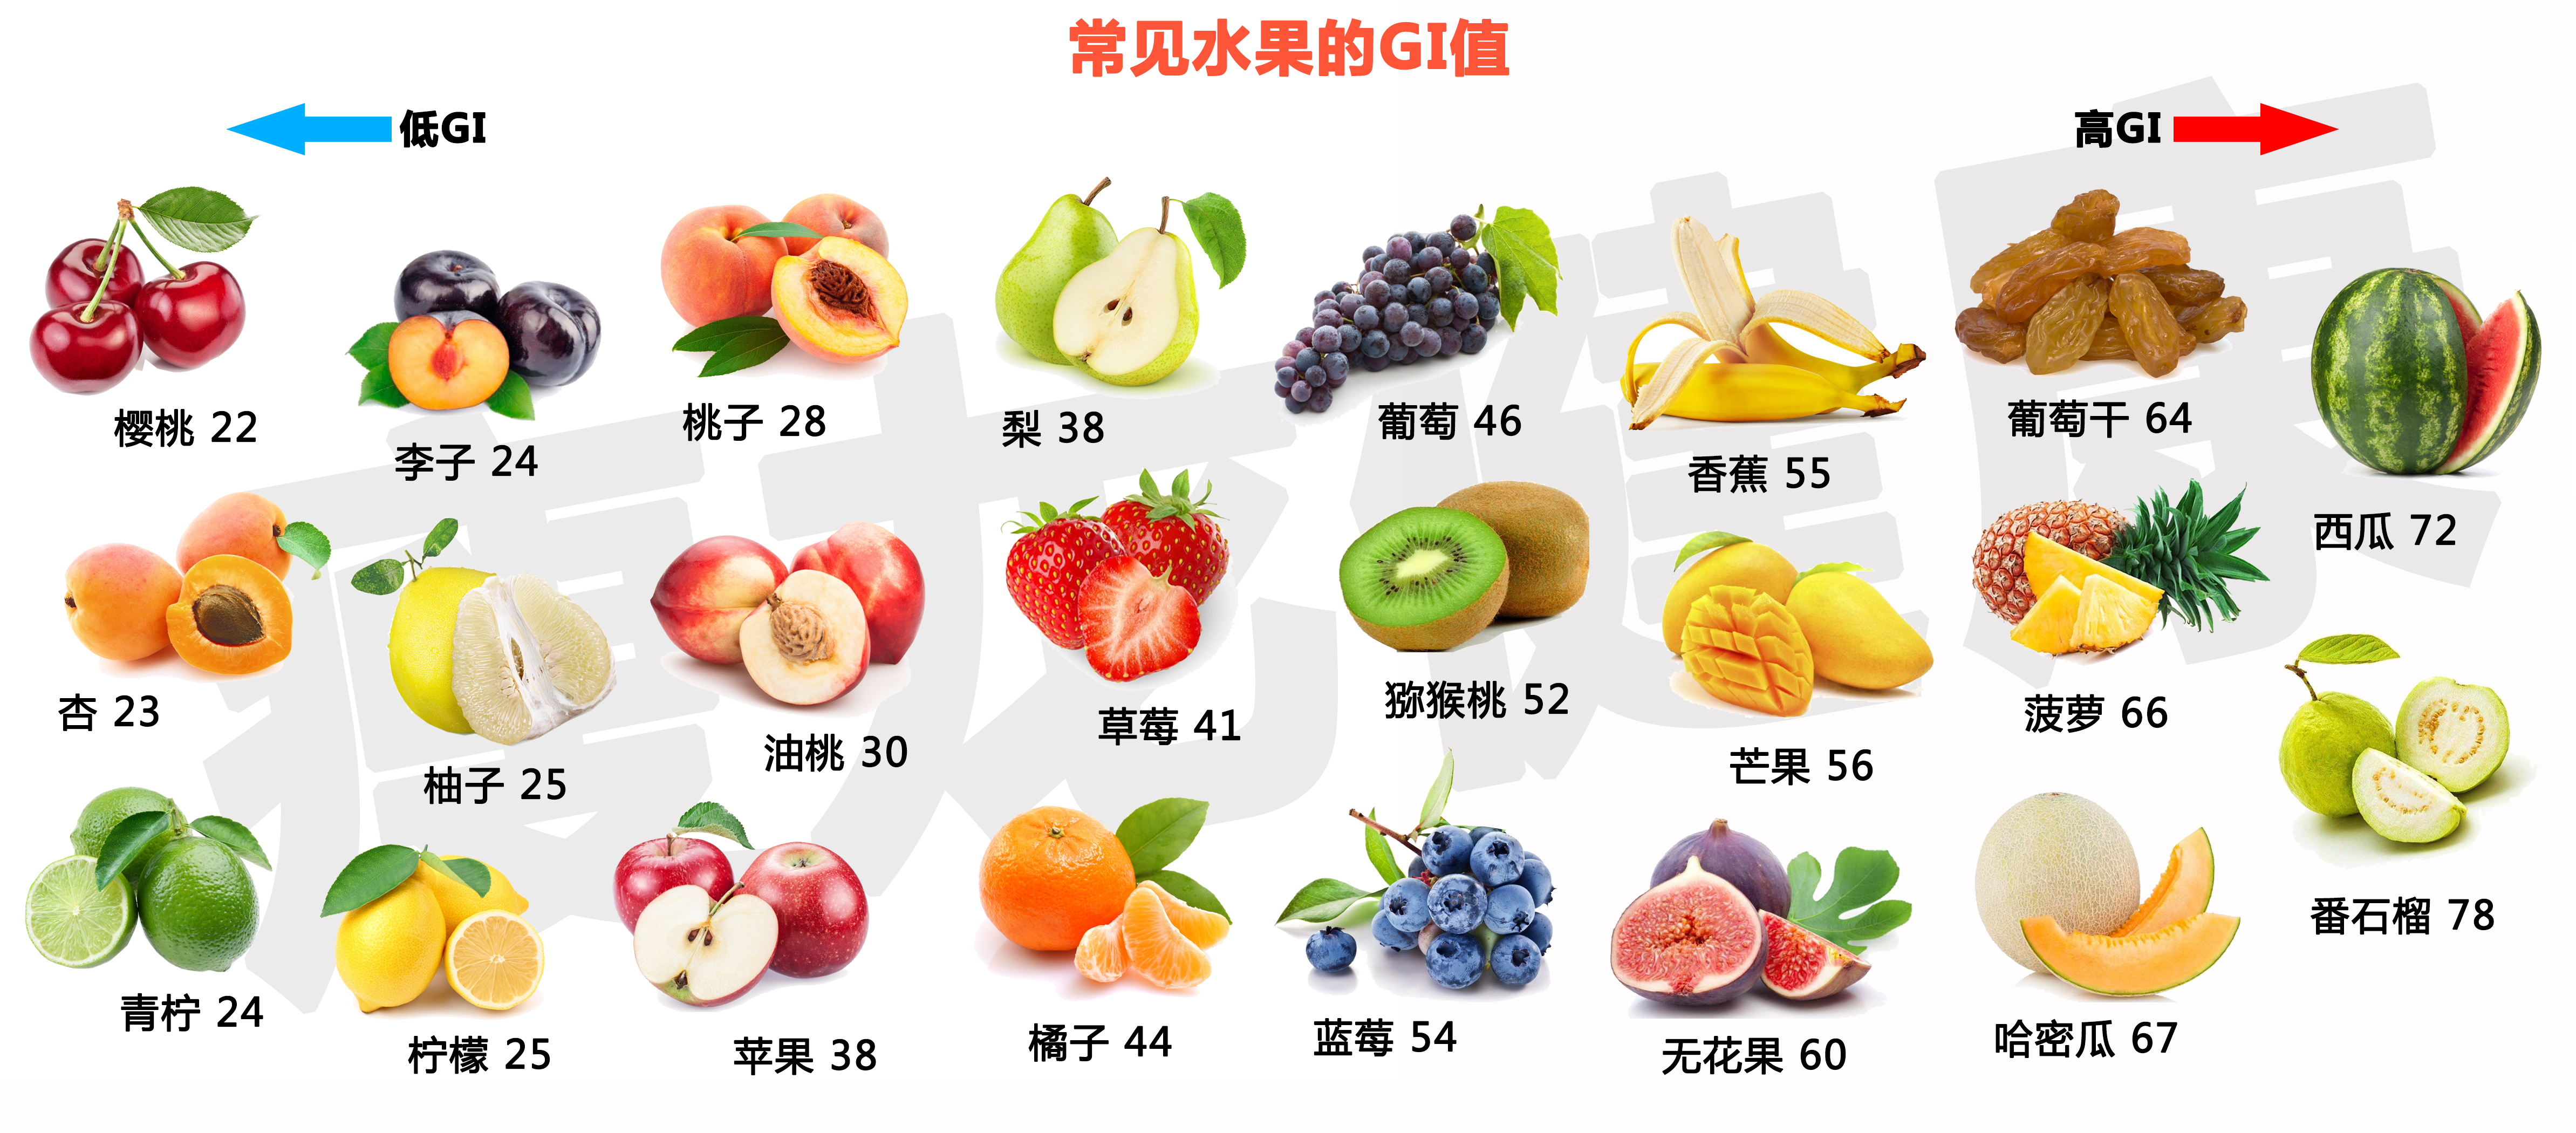 低碳生酮减肥能吃什么水果?